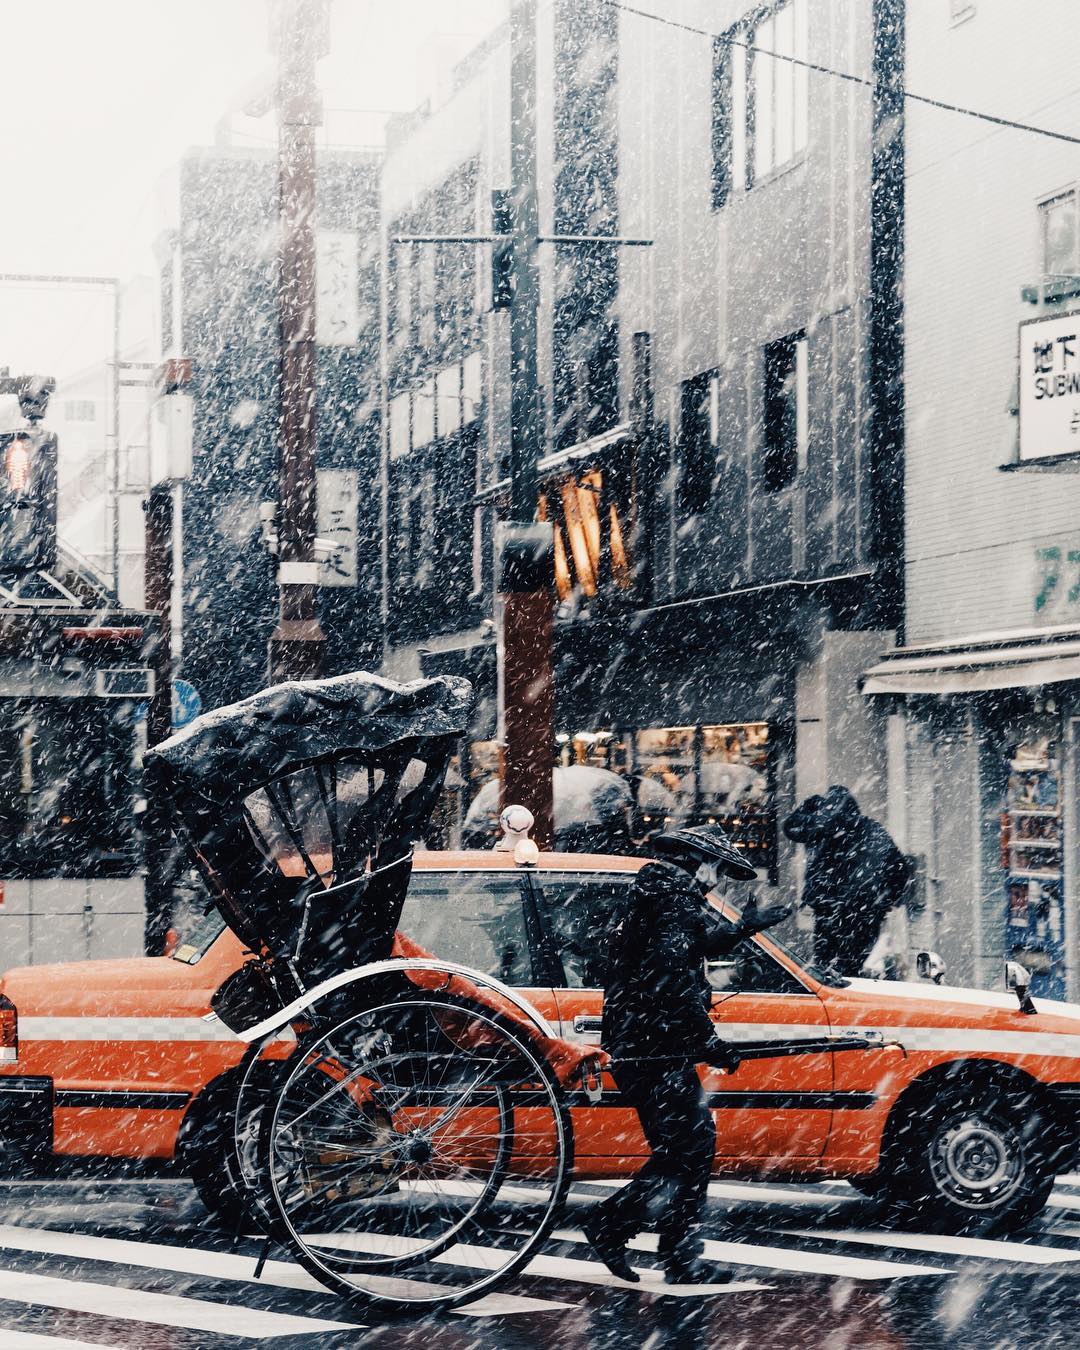 日本冬天街道图片